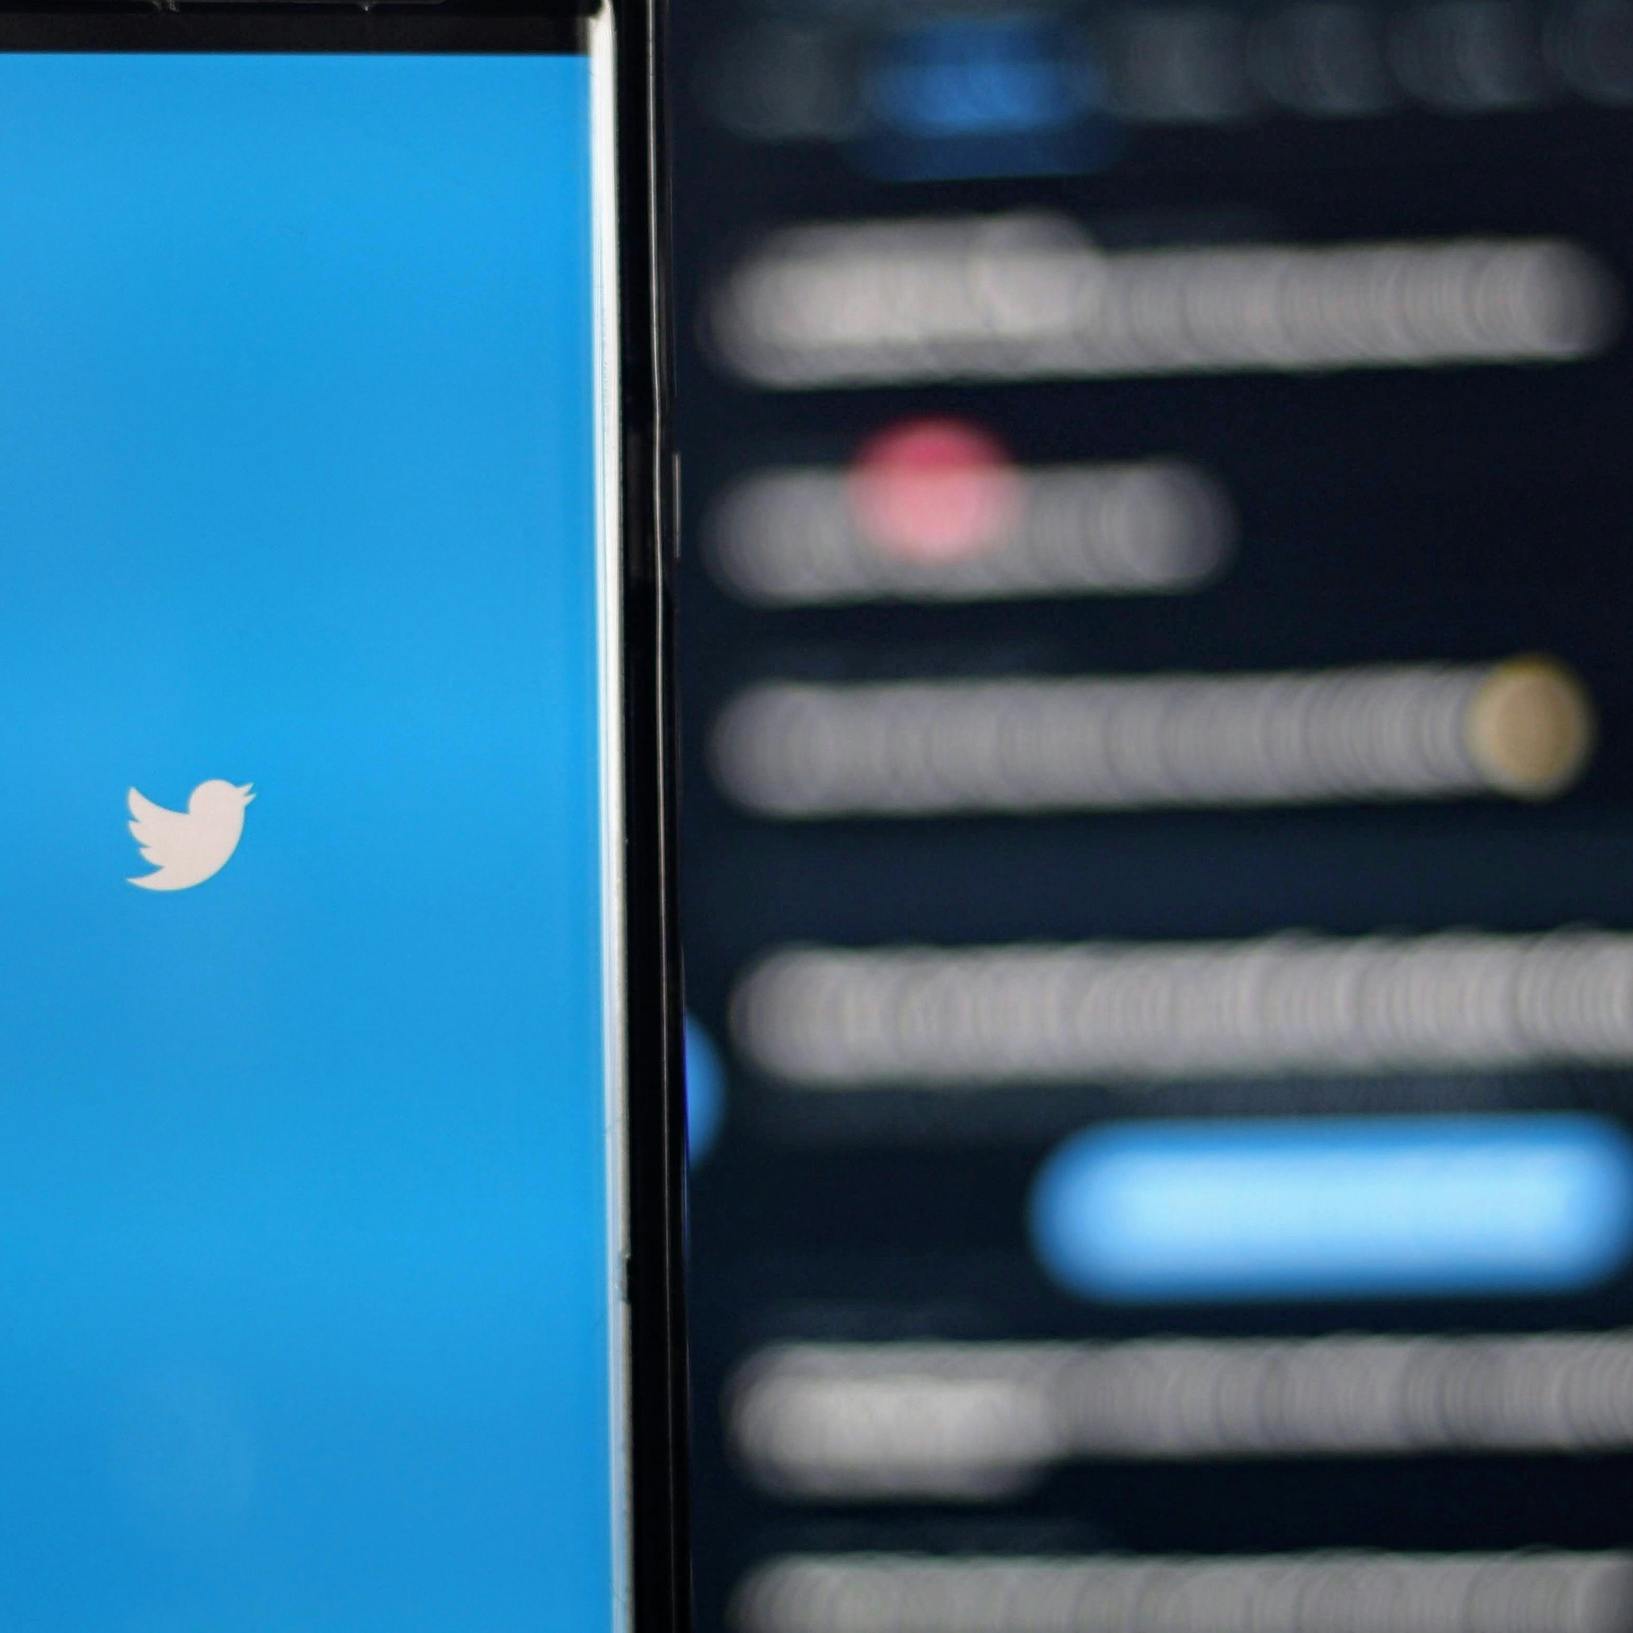 Brussel schermt met sancties na Twitter-schorsing journalisten